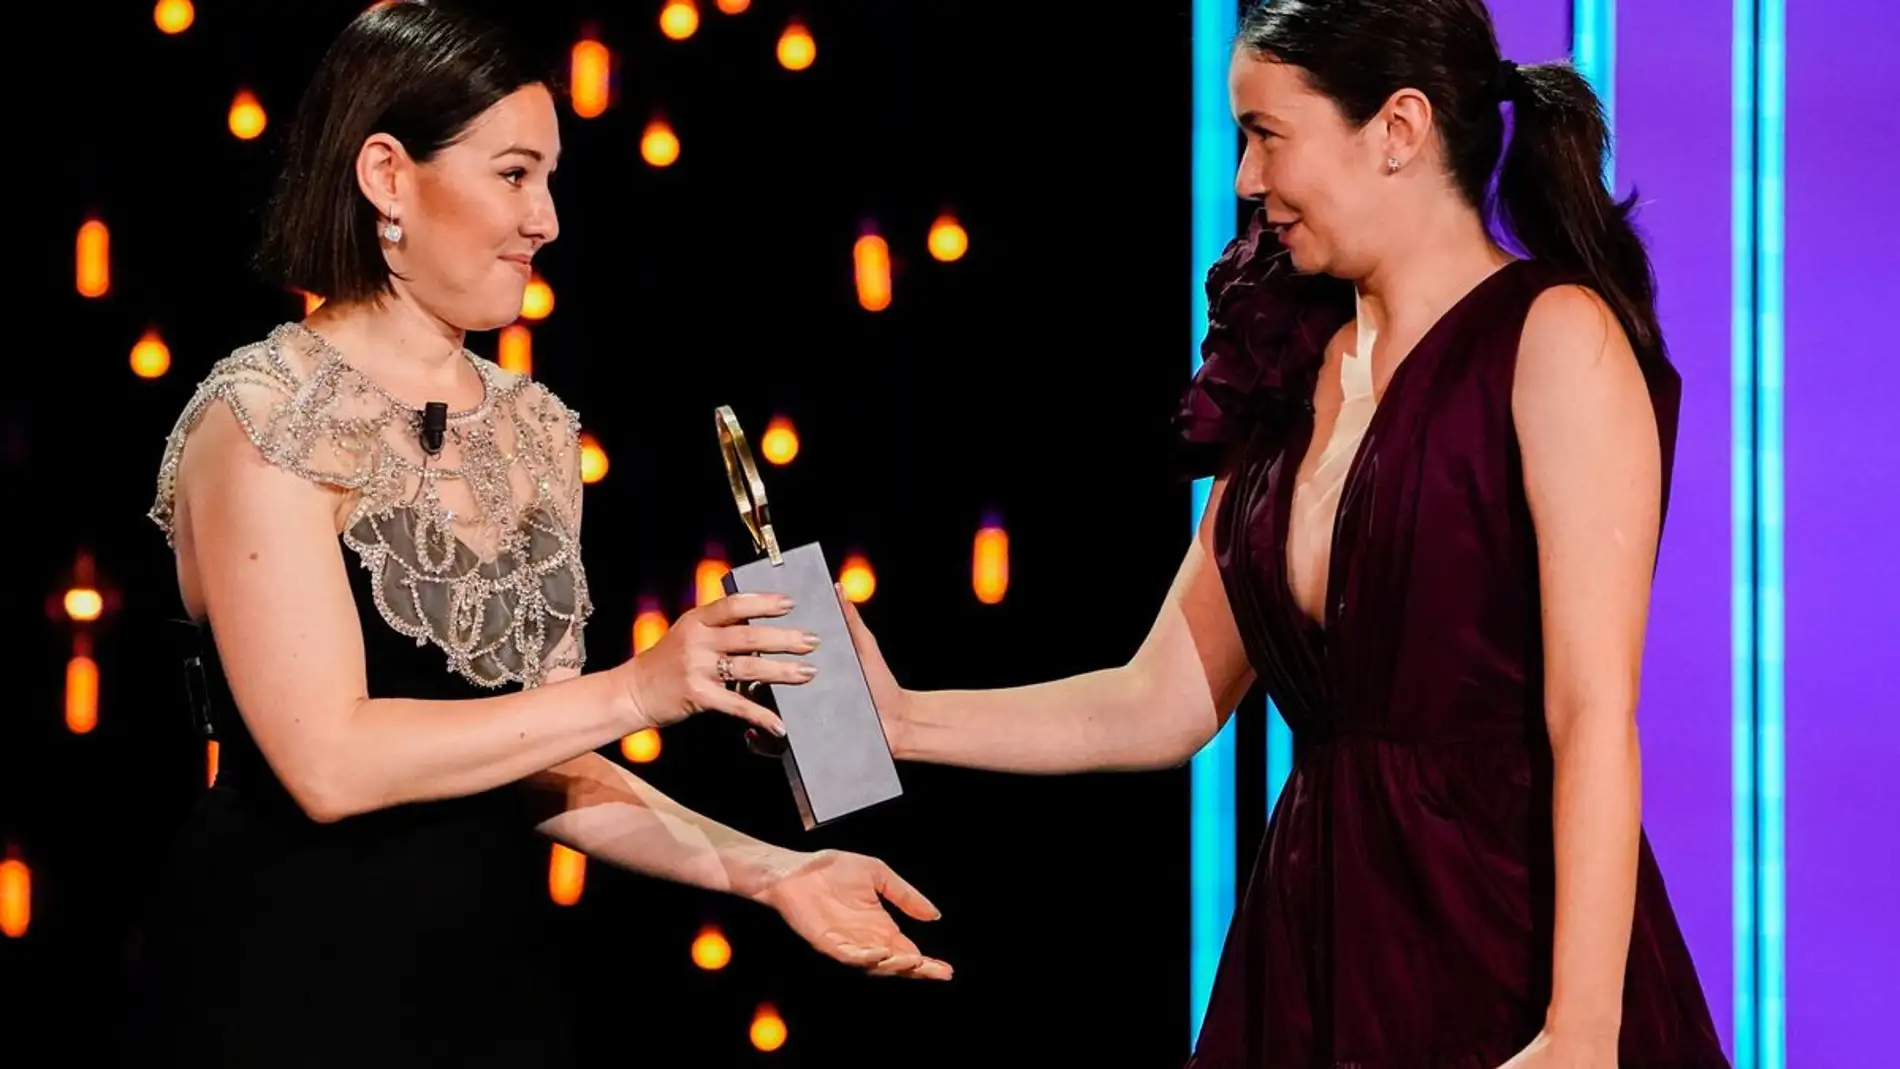 La directora rumana Alina Grigore entrega la Concha de Oro por 'Blue Moon' a su productora Gabi Suciu